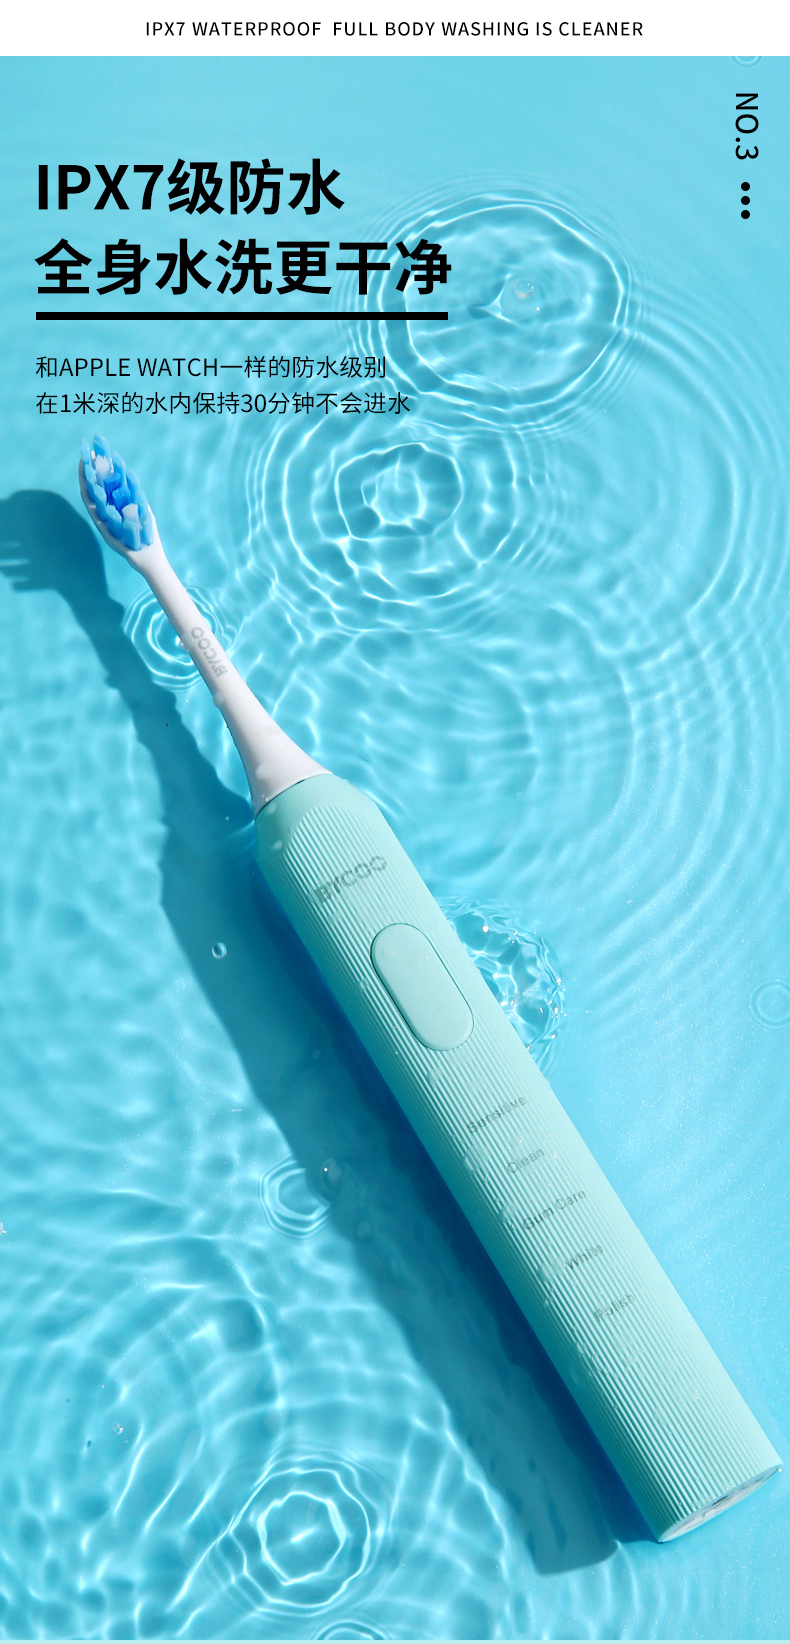 【轻众测】BYCOO电动牙刷免费试用,评测